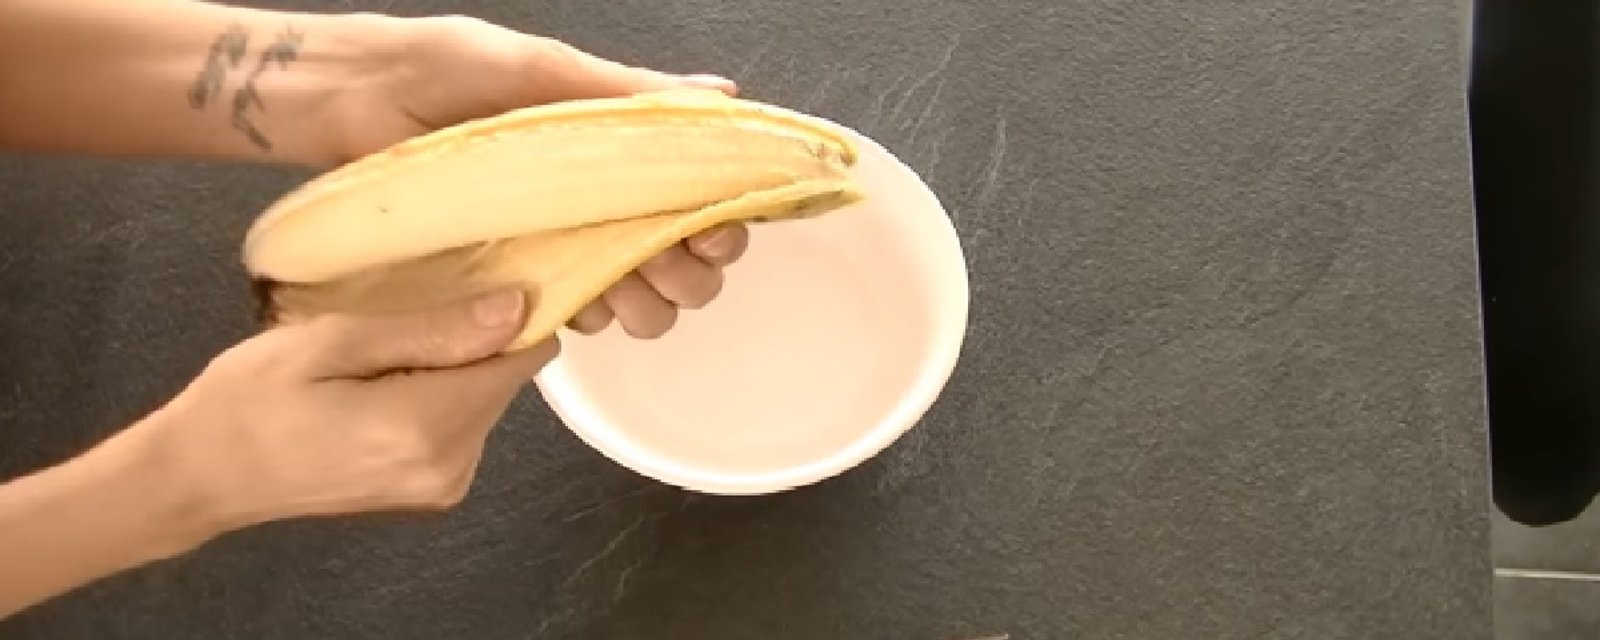 La recette de crêpes à la banane qui bluffe tout le monde: 2 ingrédients seulement!